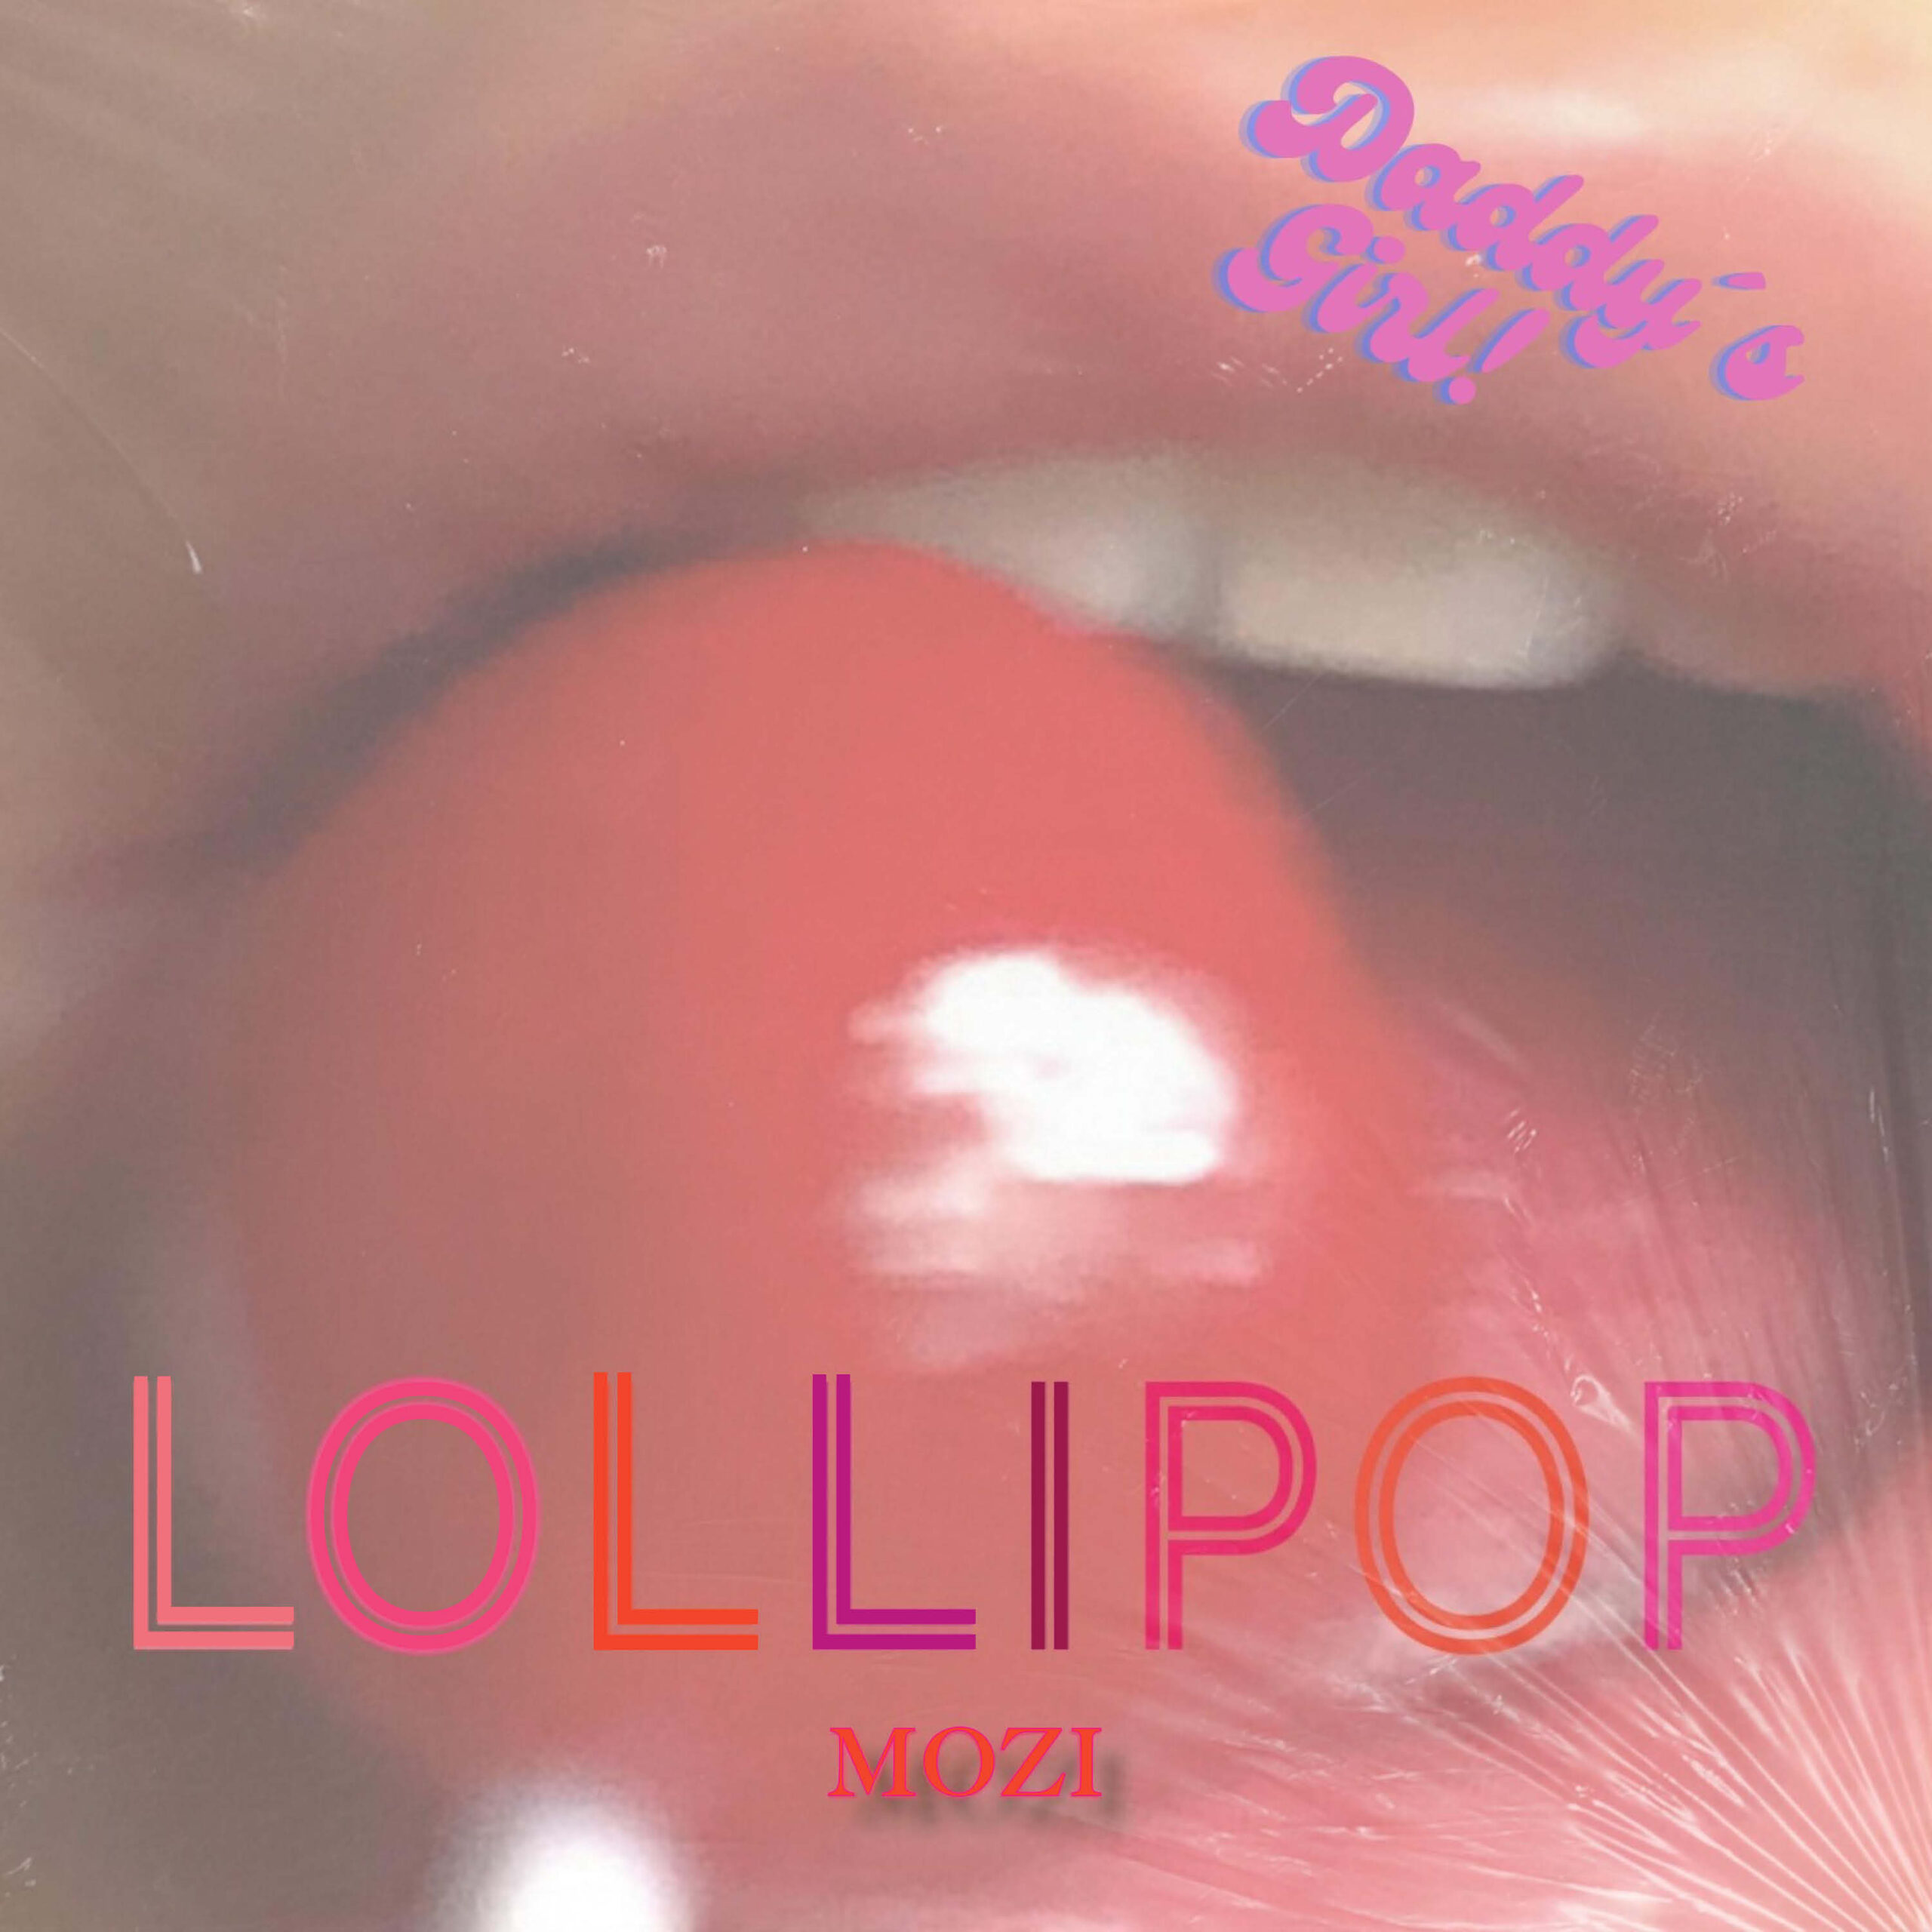 POP Single by Mozi: Lollipop getting licked by Lips